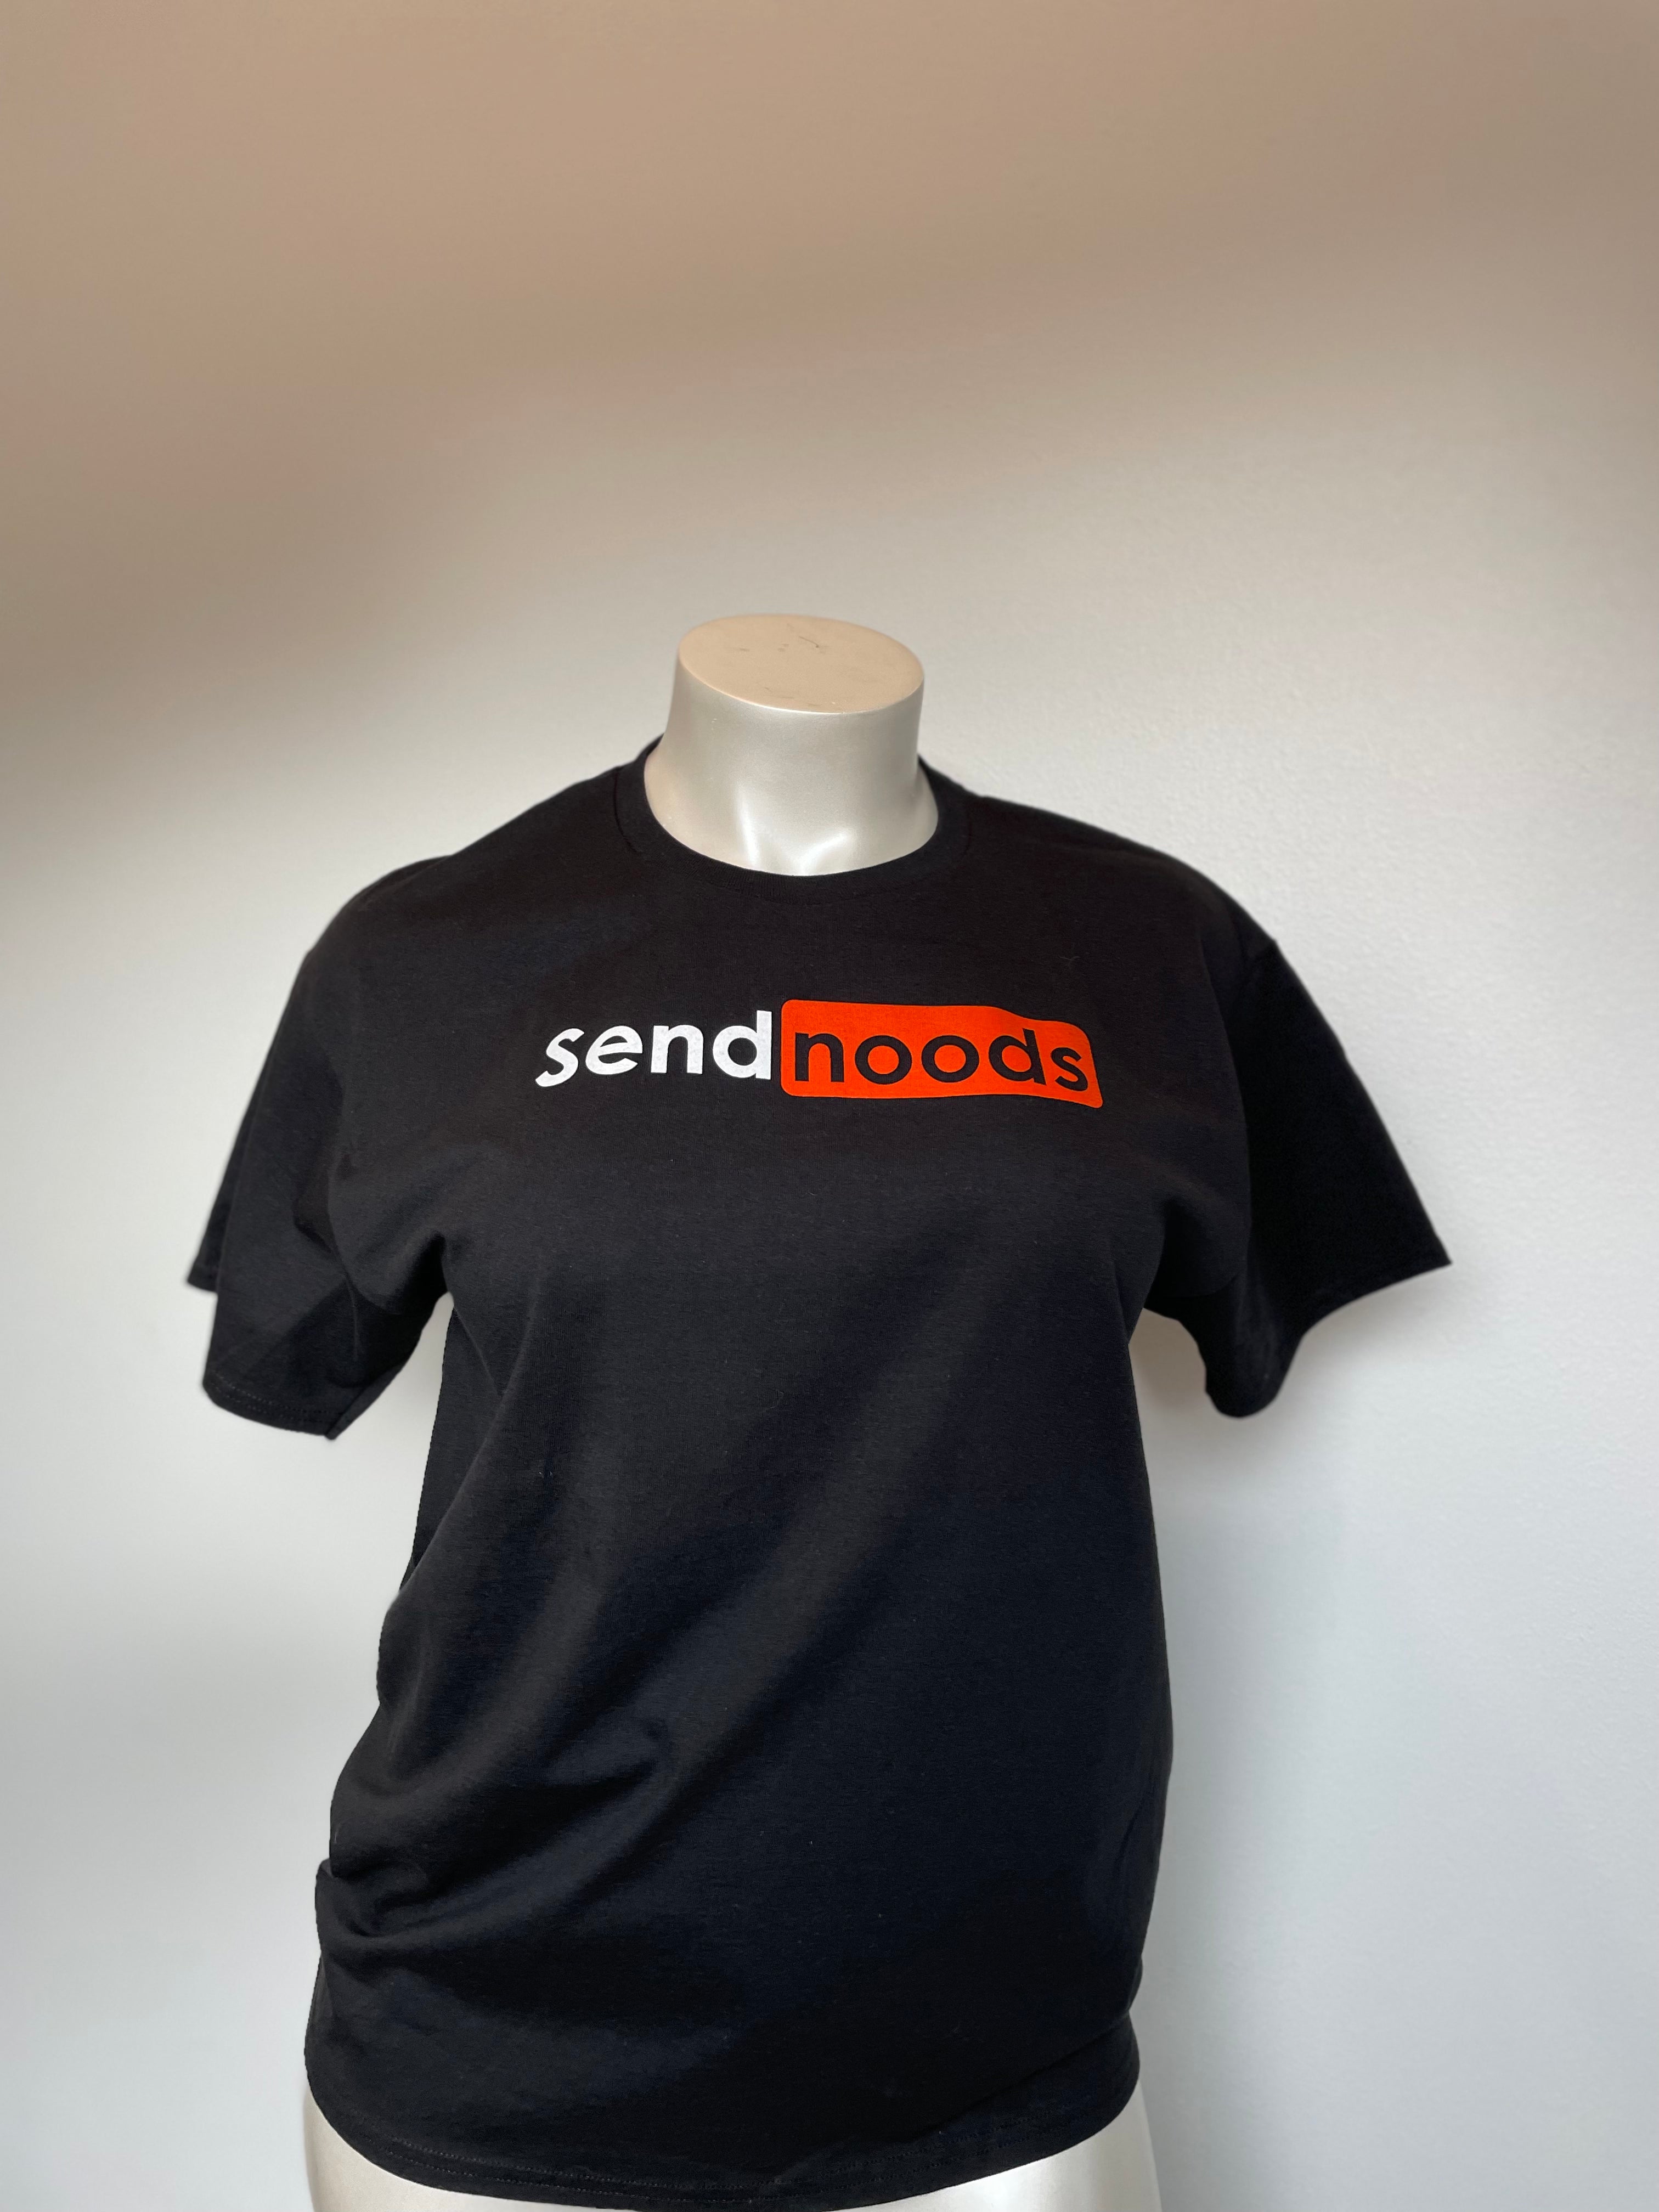 Send Noods // T-Shirt